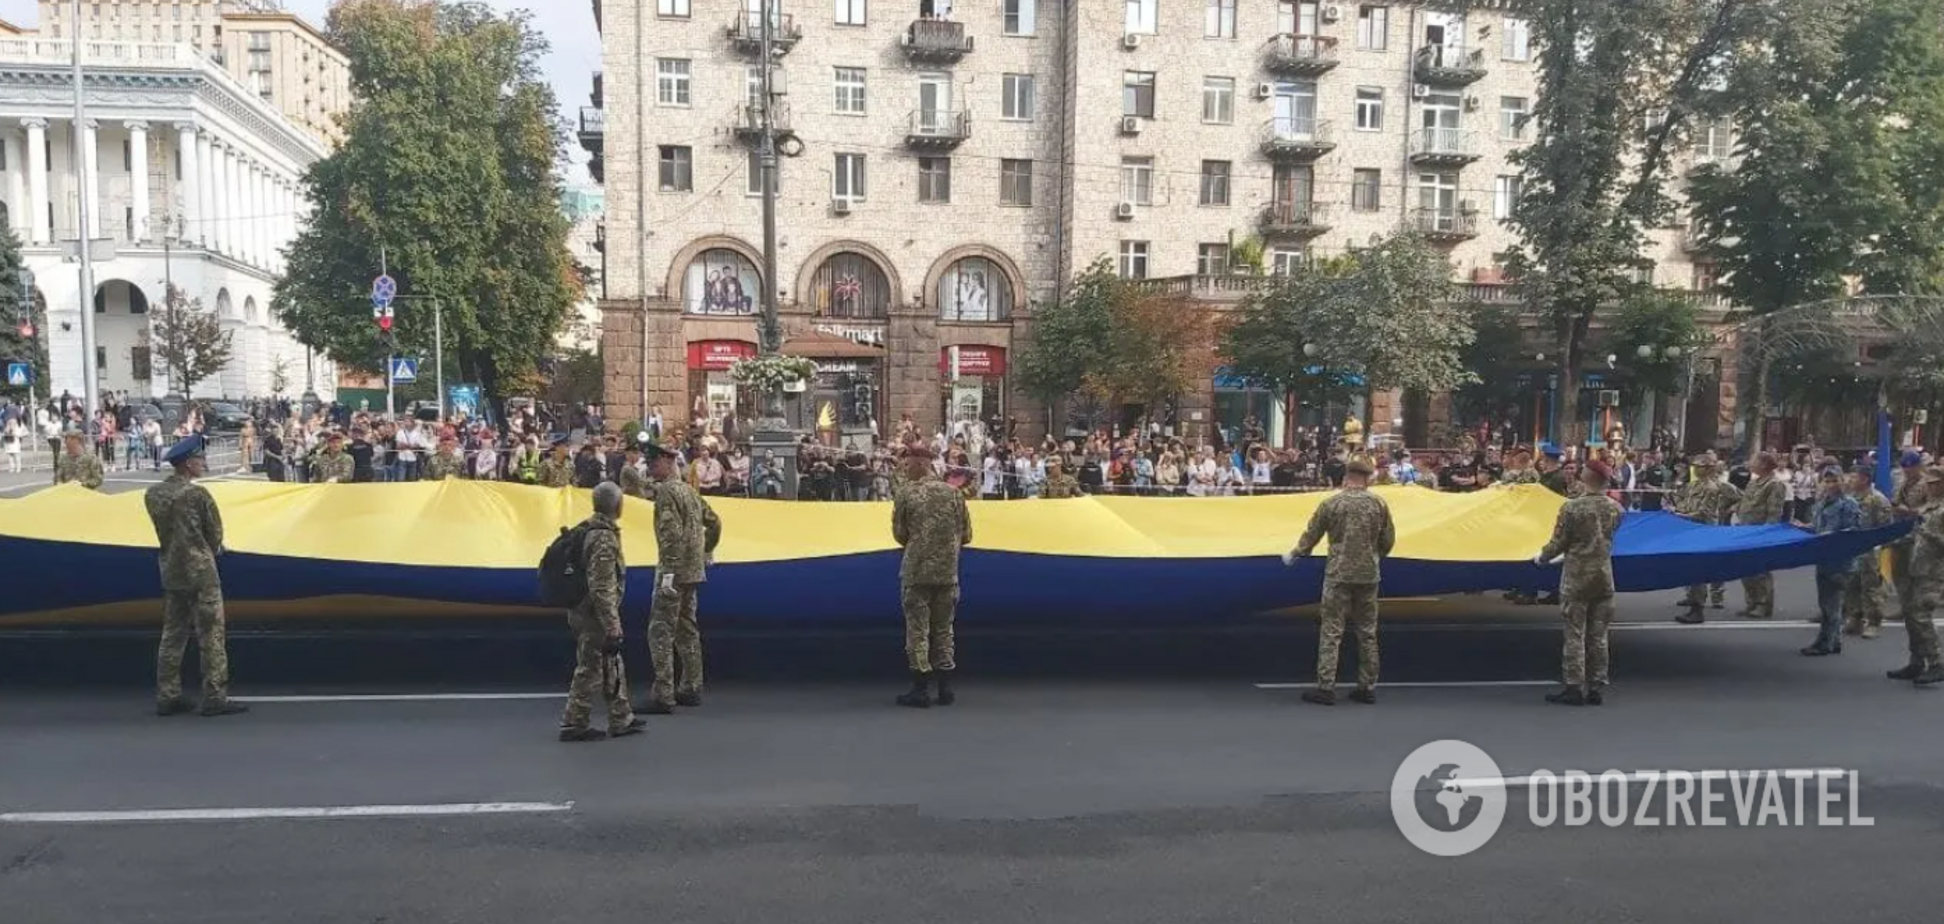 Военные на Крещатике снова скандировали известную кричалку о Путине. Видео 18+